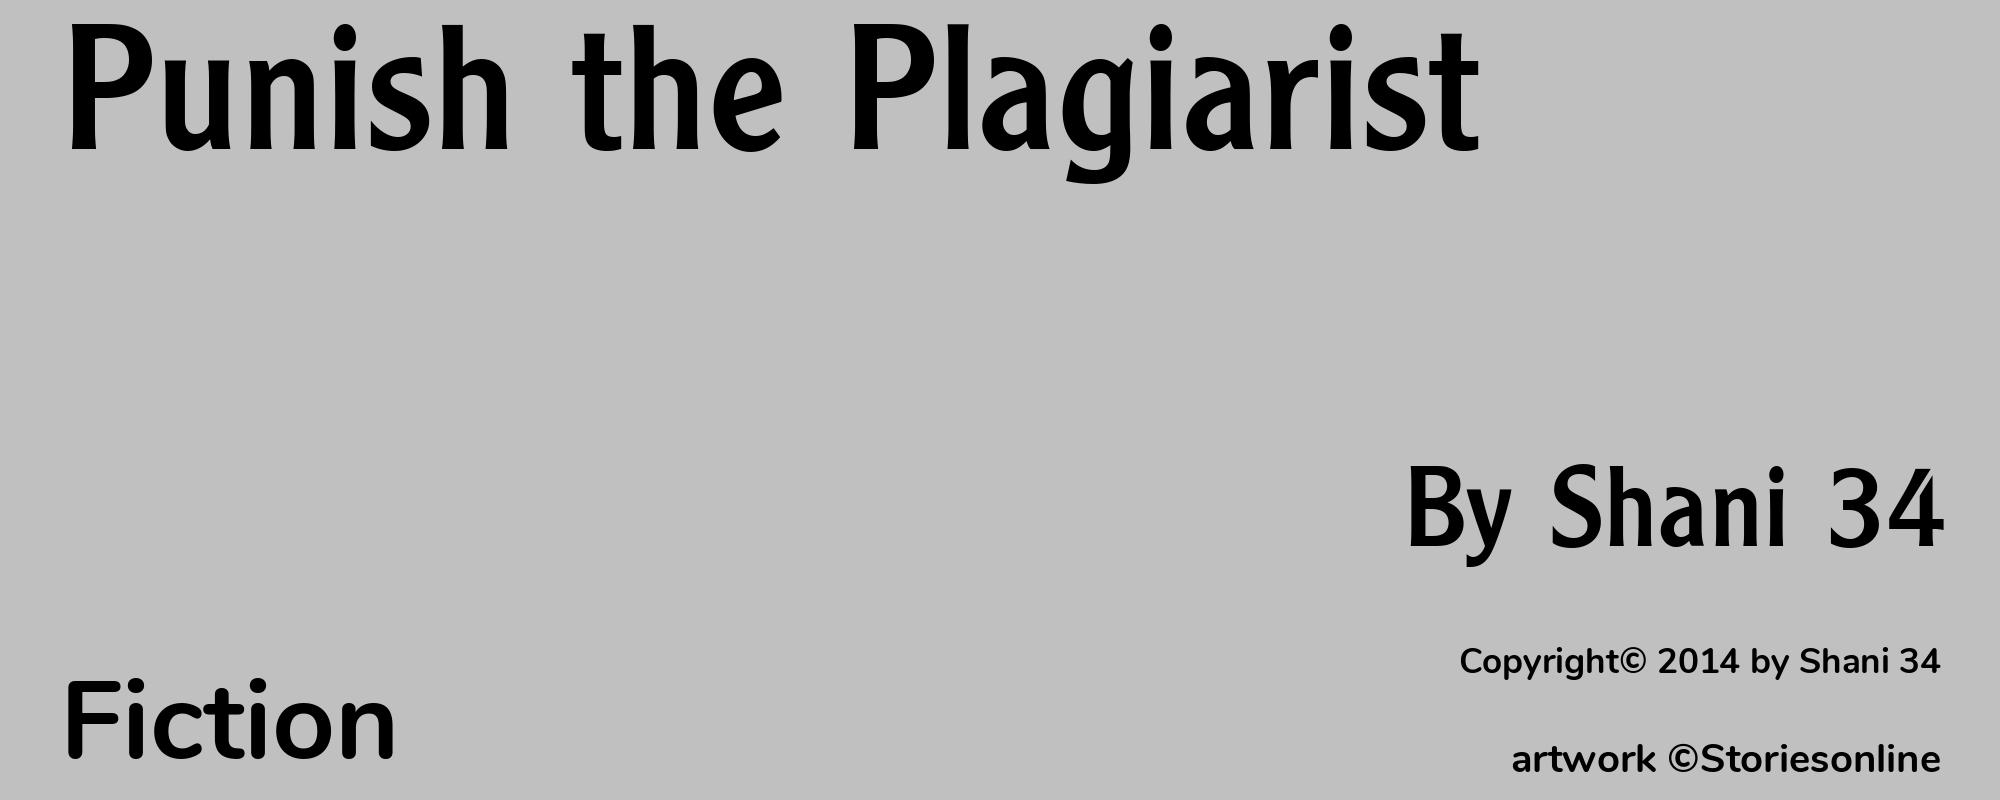 Punish the Plagiarist - Cover